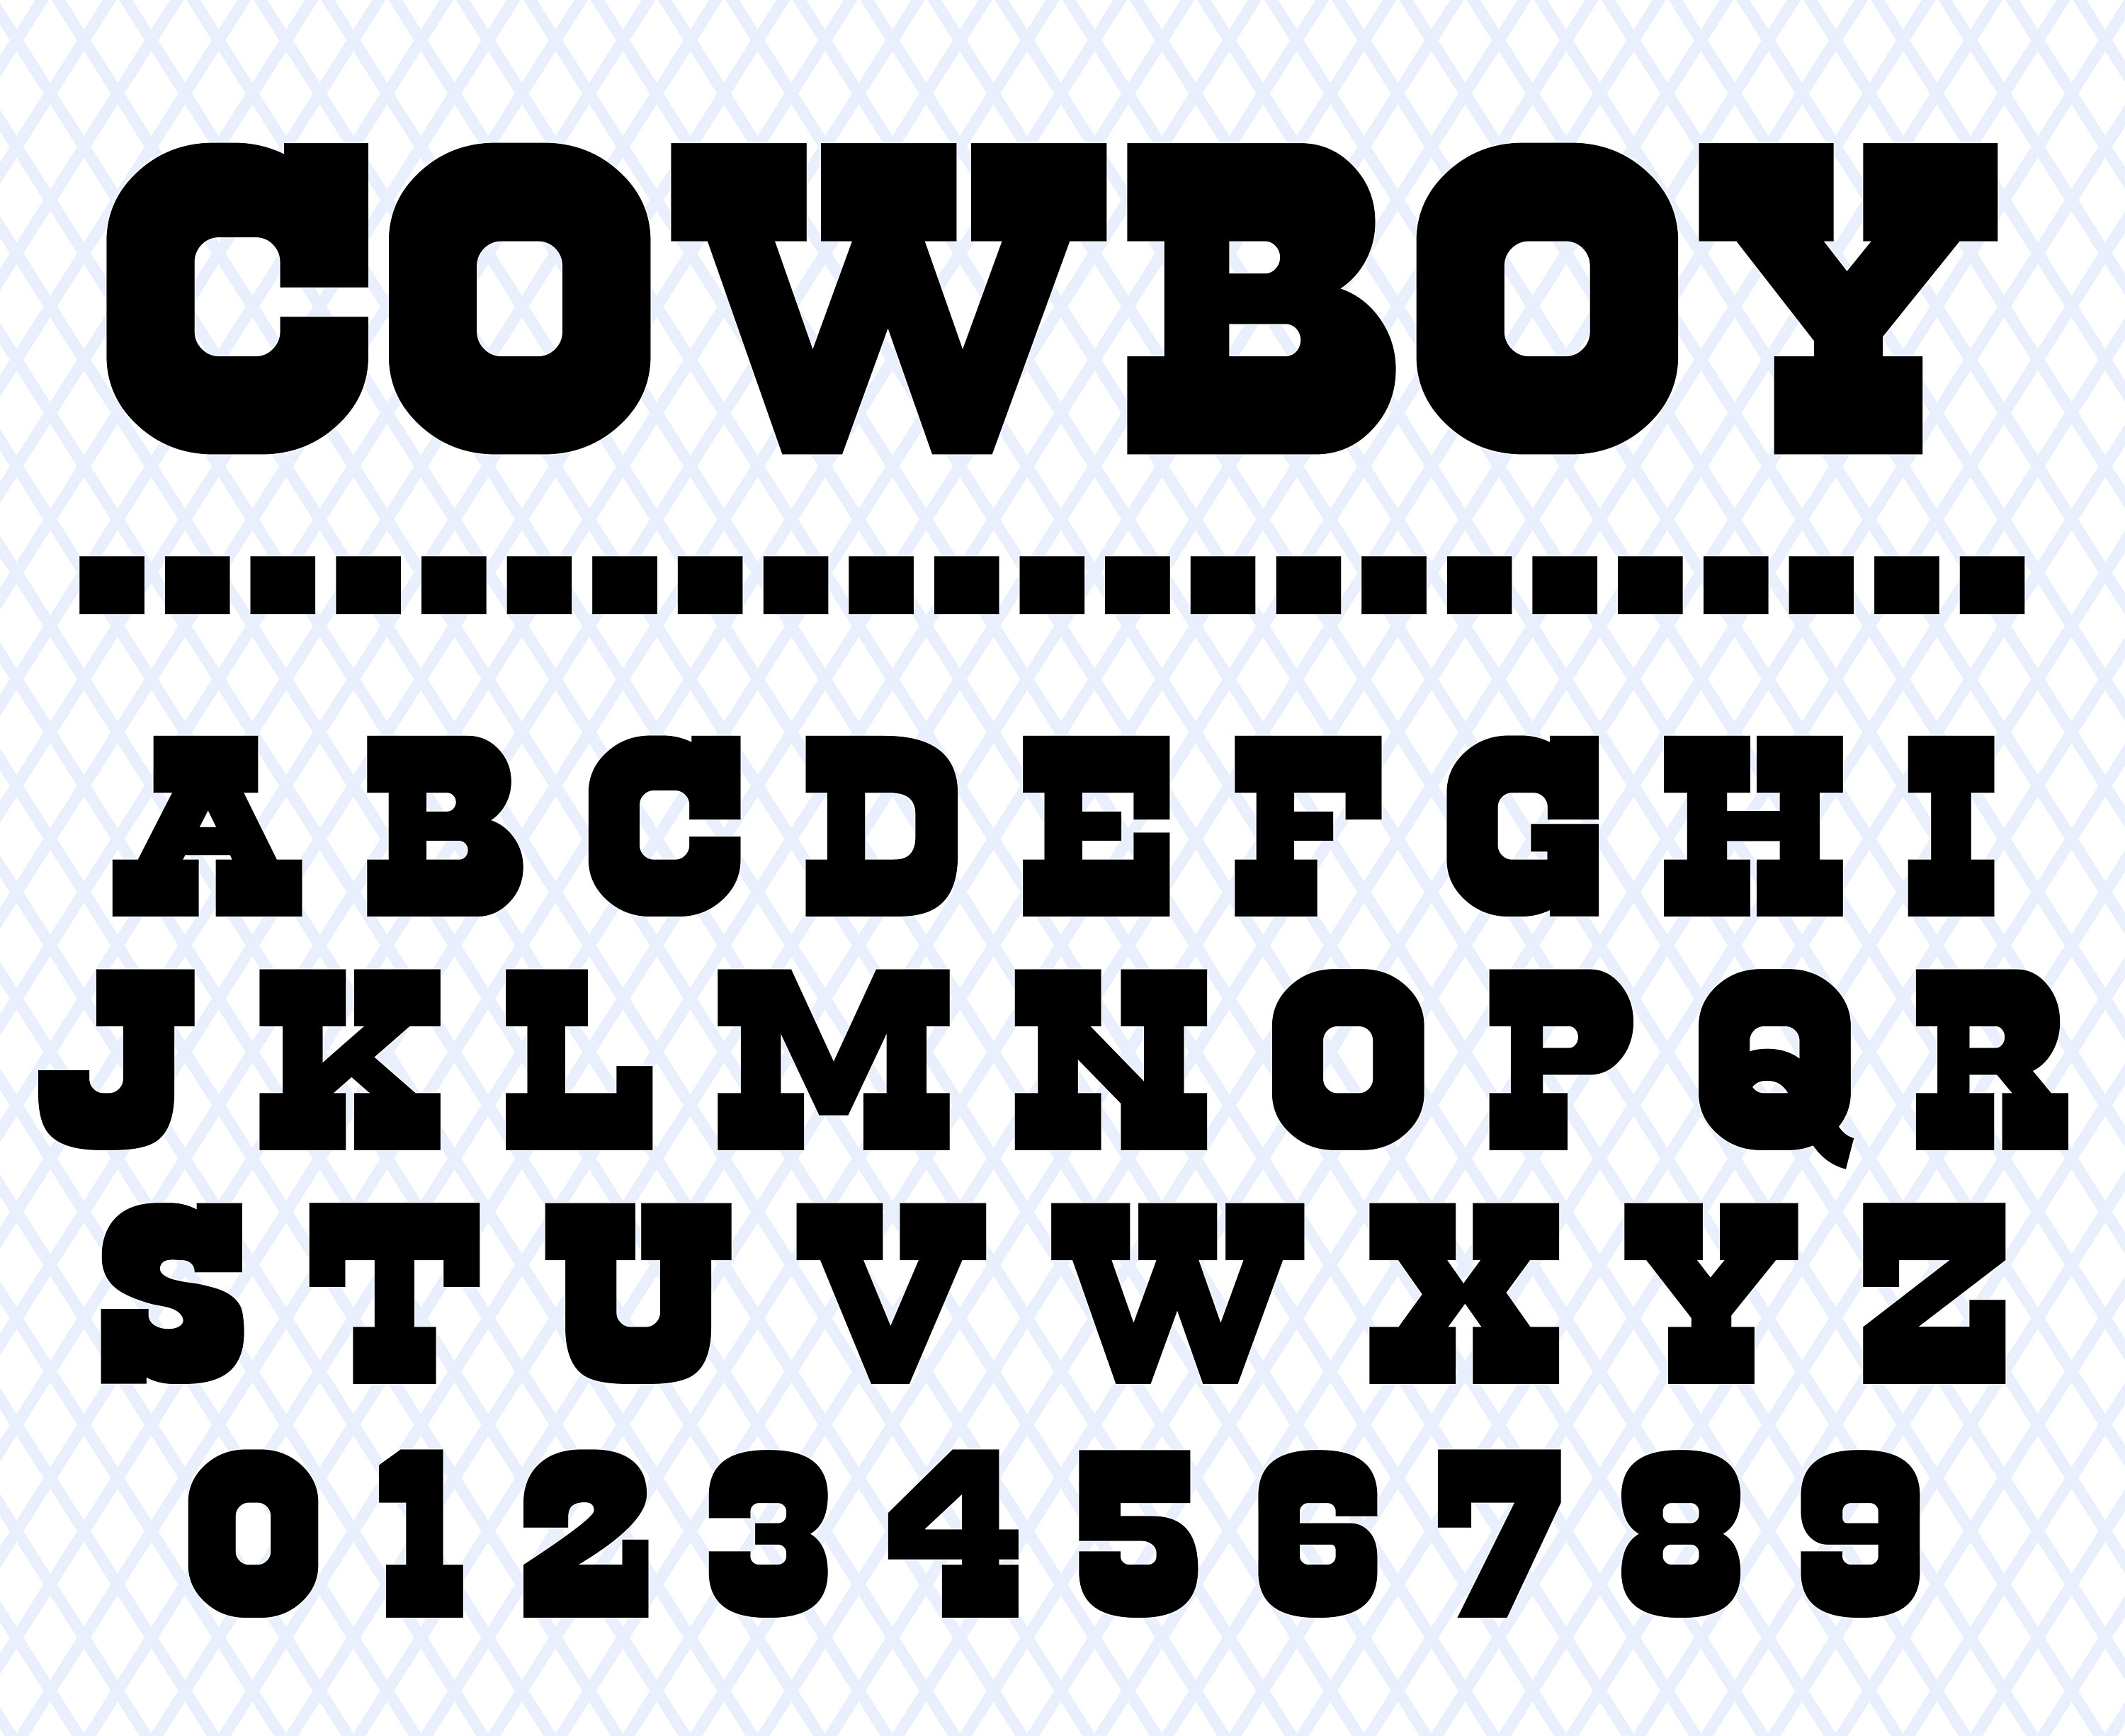 Dallas Cowboys Unique Football Star Custom Stencil – My Custom Stencils